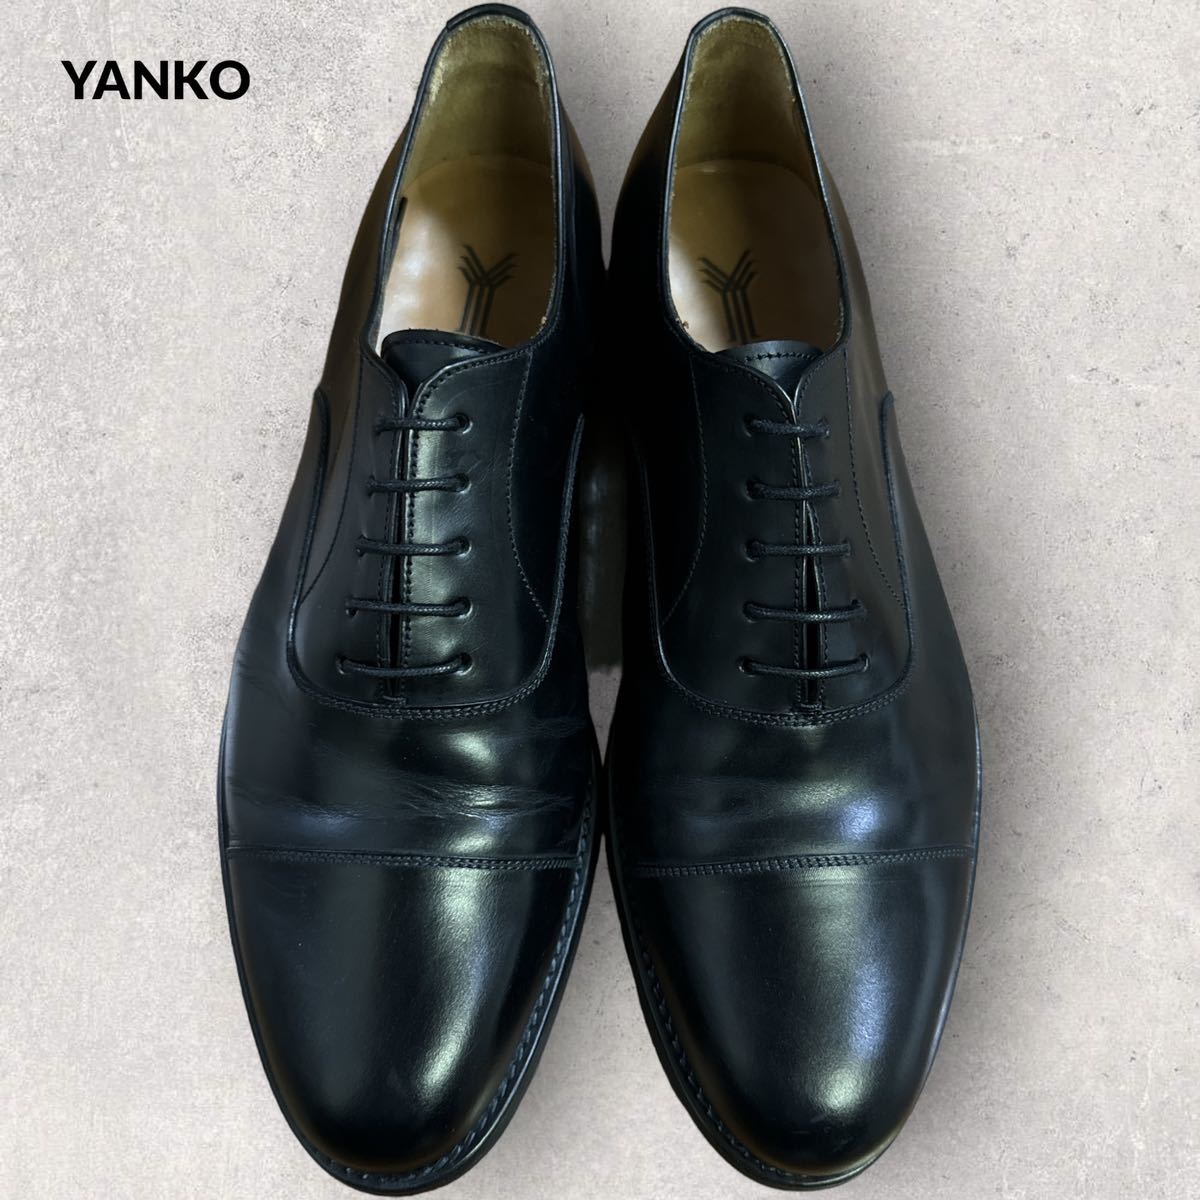 YANKO キャップトゥ ストレートチップ レザー ドレスシューズ UK8 ブラック ビジネスシューズ